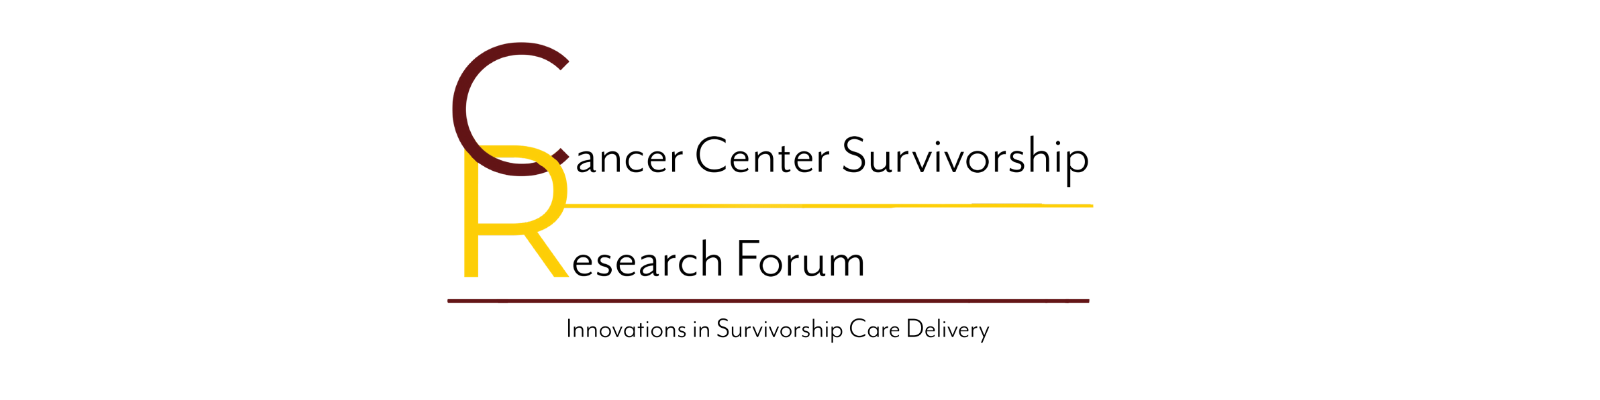 Cancer Center Survivorship Research Forum Banner